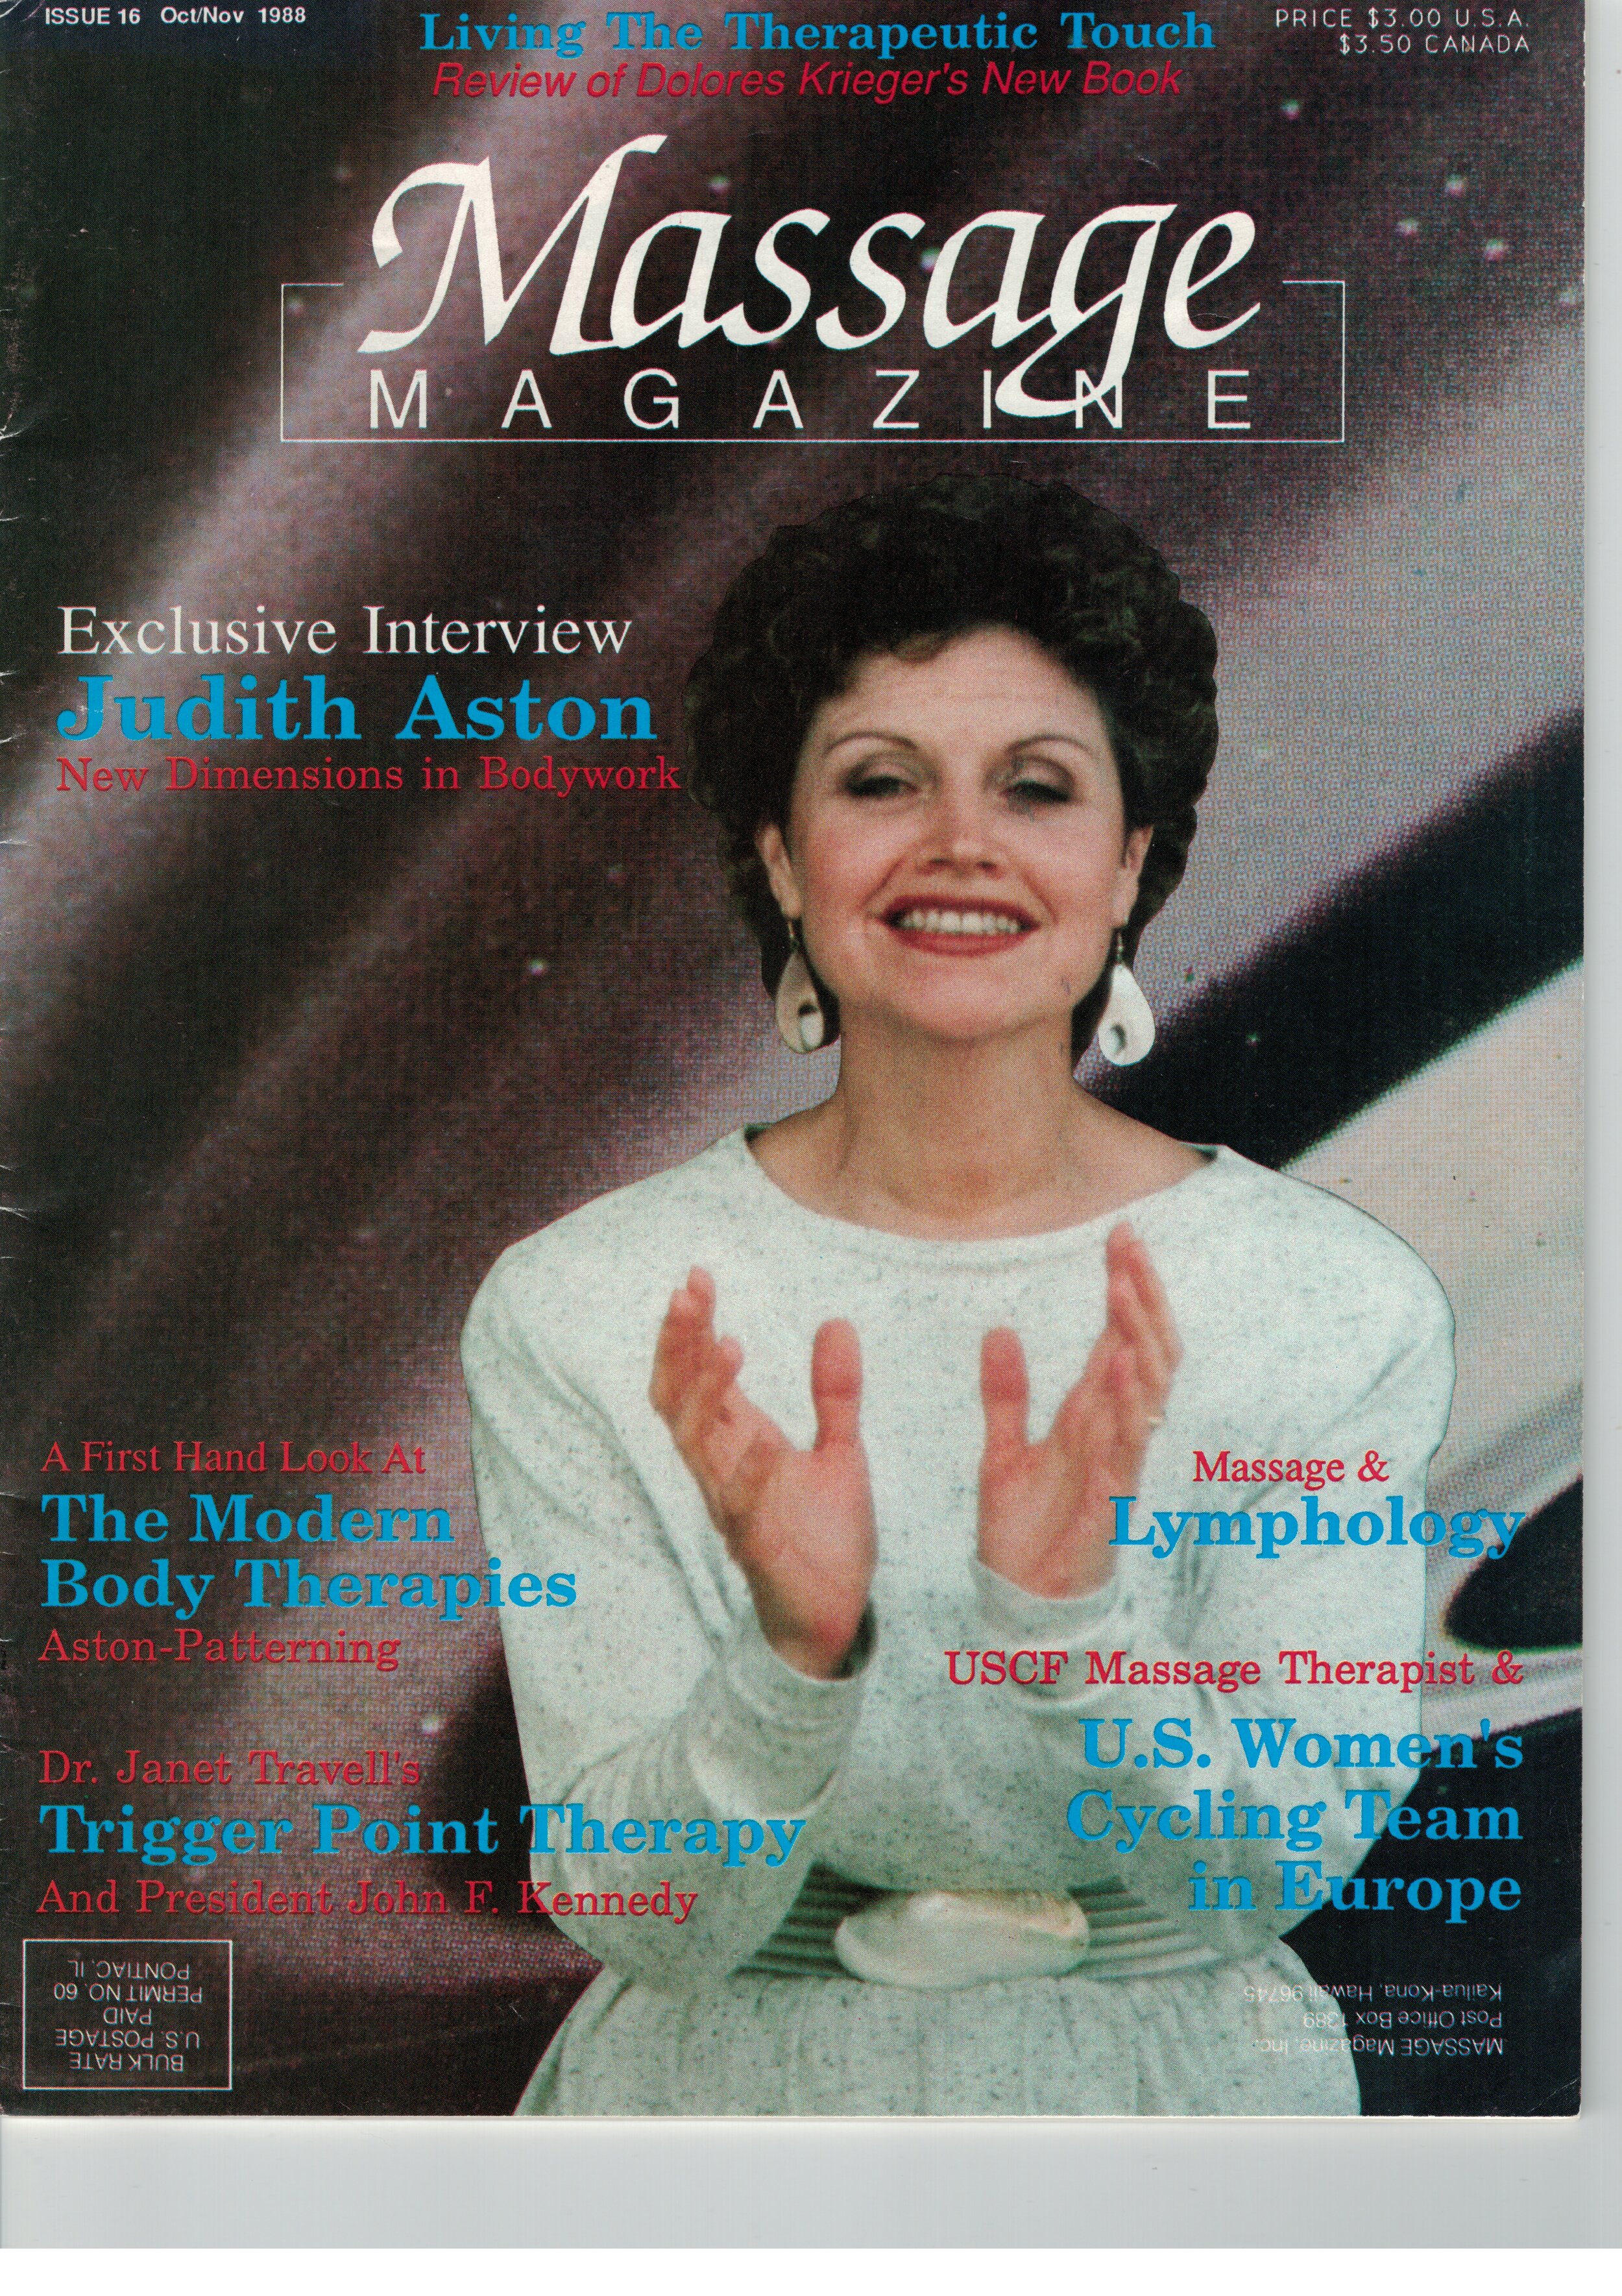 Massage Magazine Article - Judith.jpeg